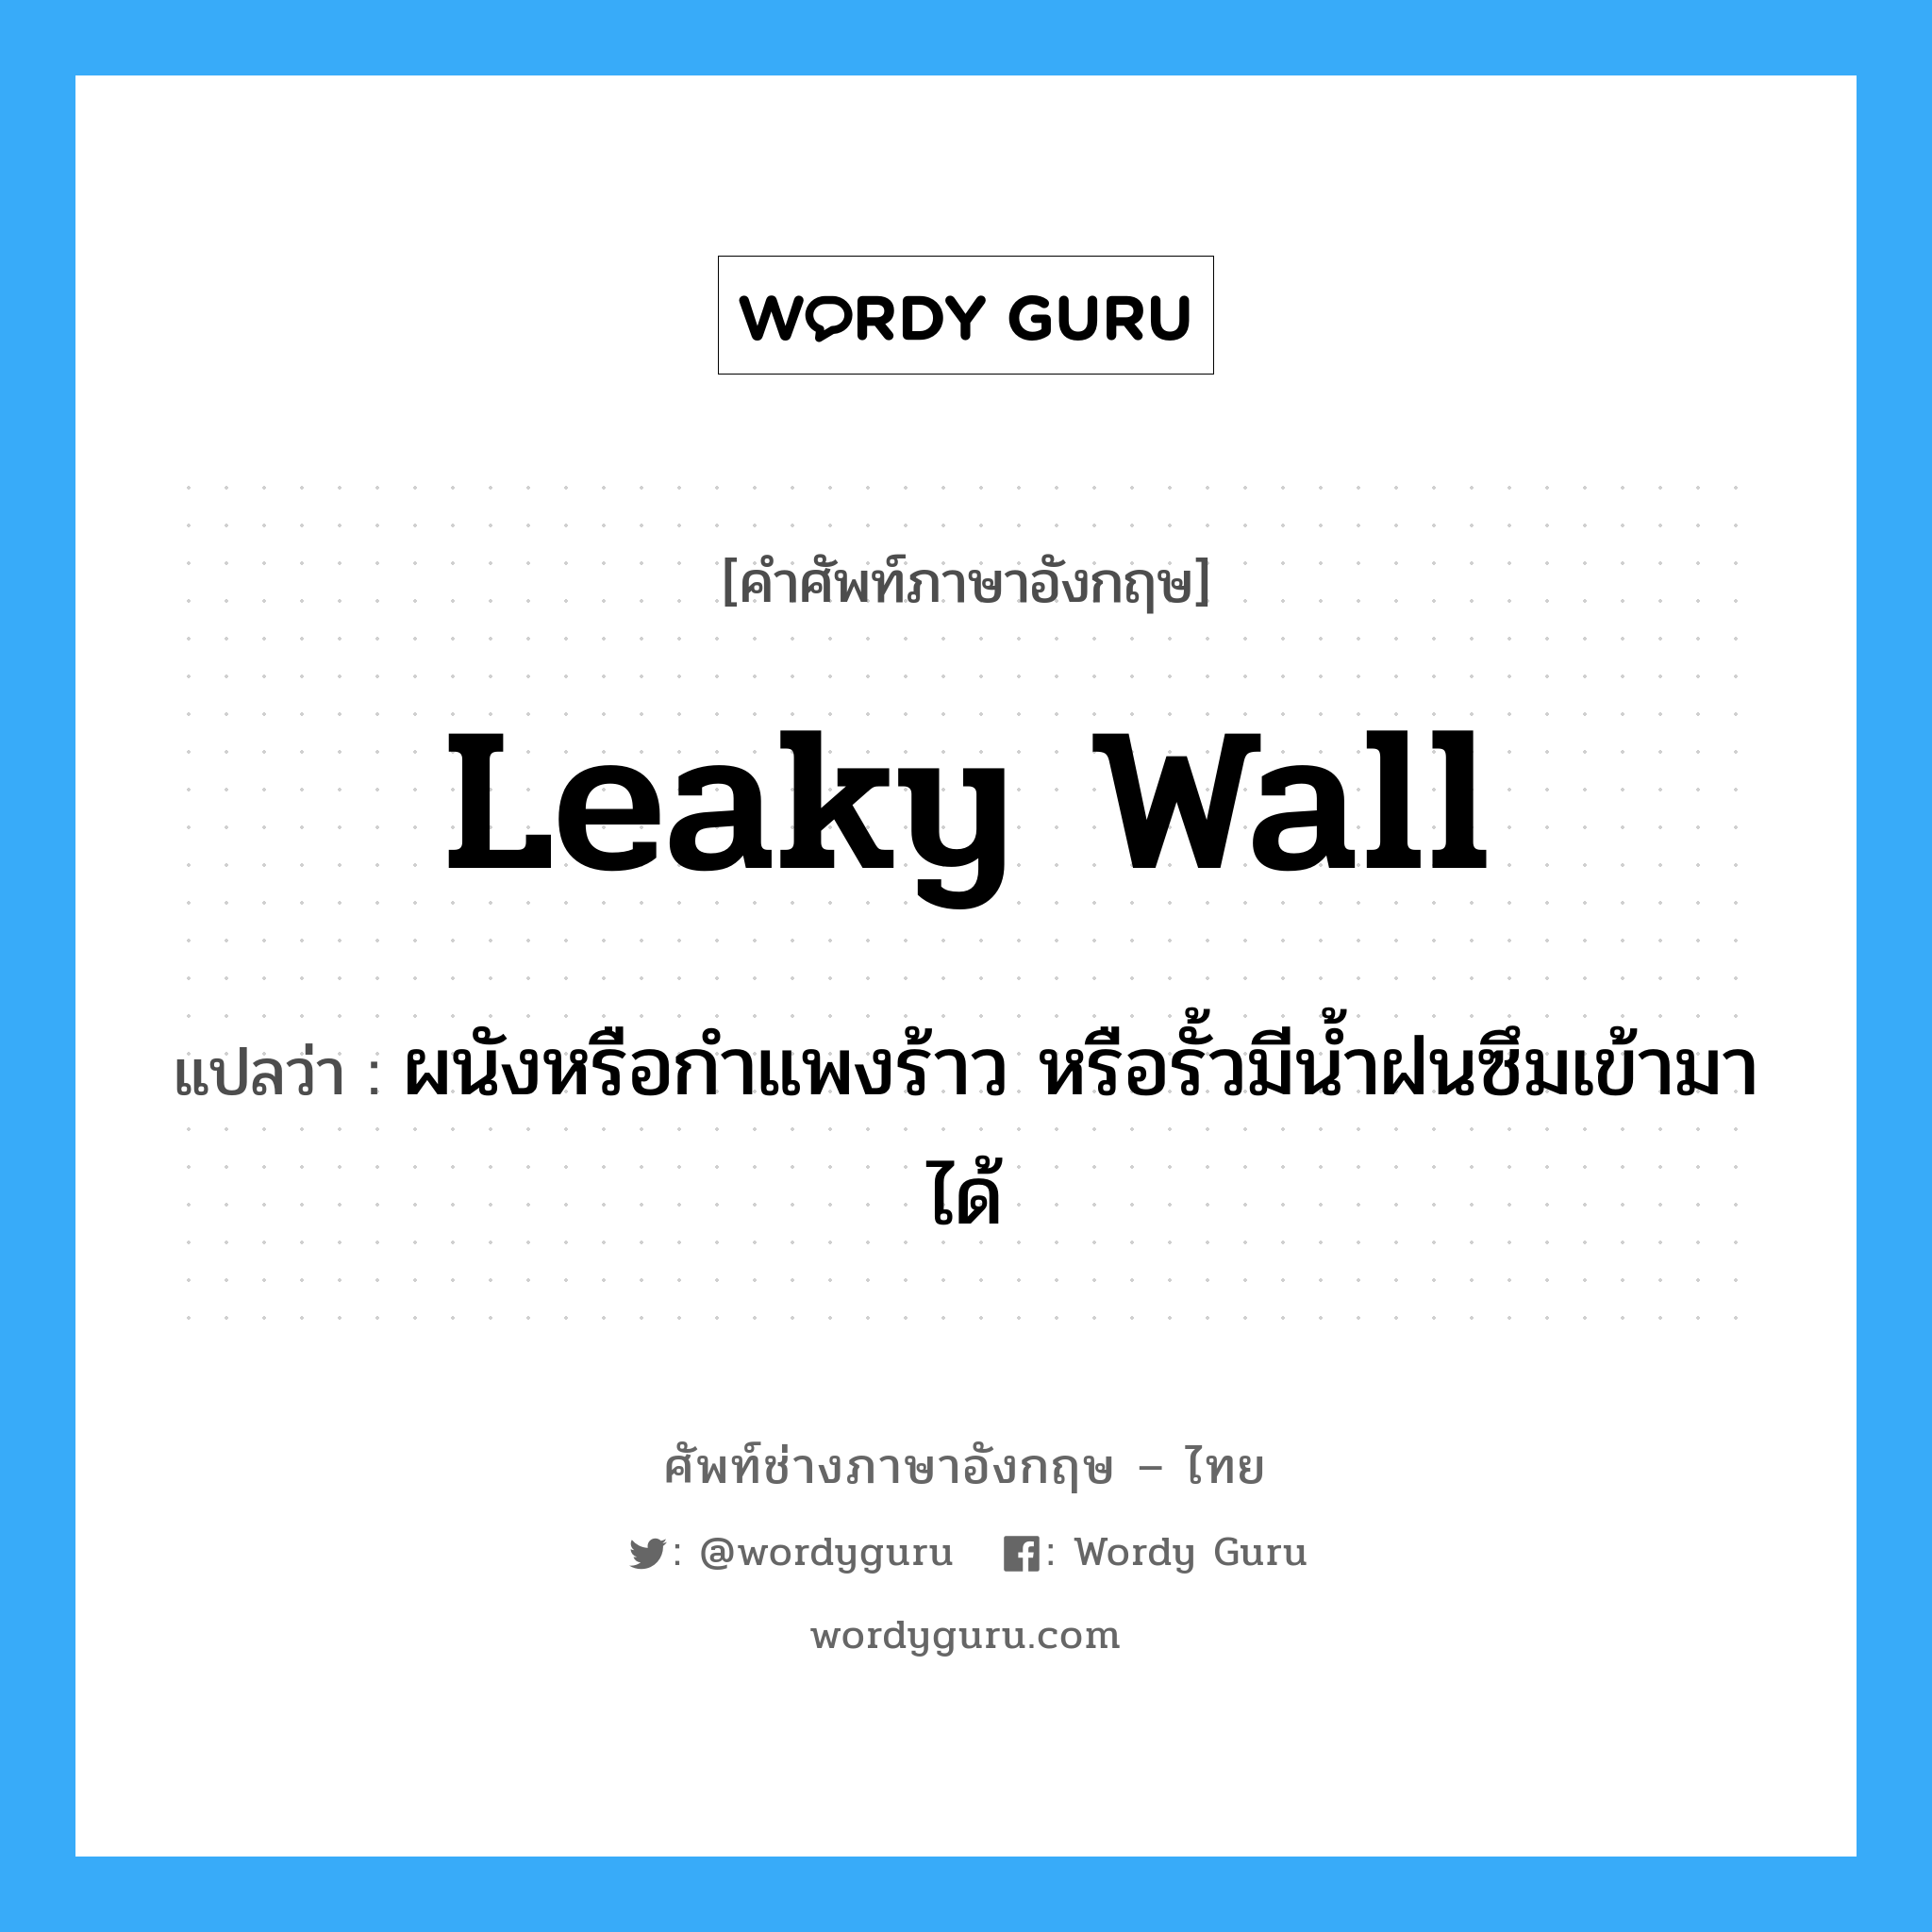 leaky wall แปลว่า?, คำศัพท์ช่างภาษาอังกฤษ - ไทย leaky wall คำศัพท์ภาษาอังกฤษ leaky wall แปลว่า ผนังหรือกำแพงร้าว หรือรั้วมีน้ำฝนซึมเข้ามาได้